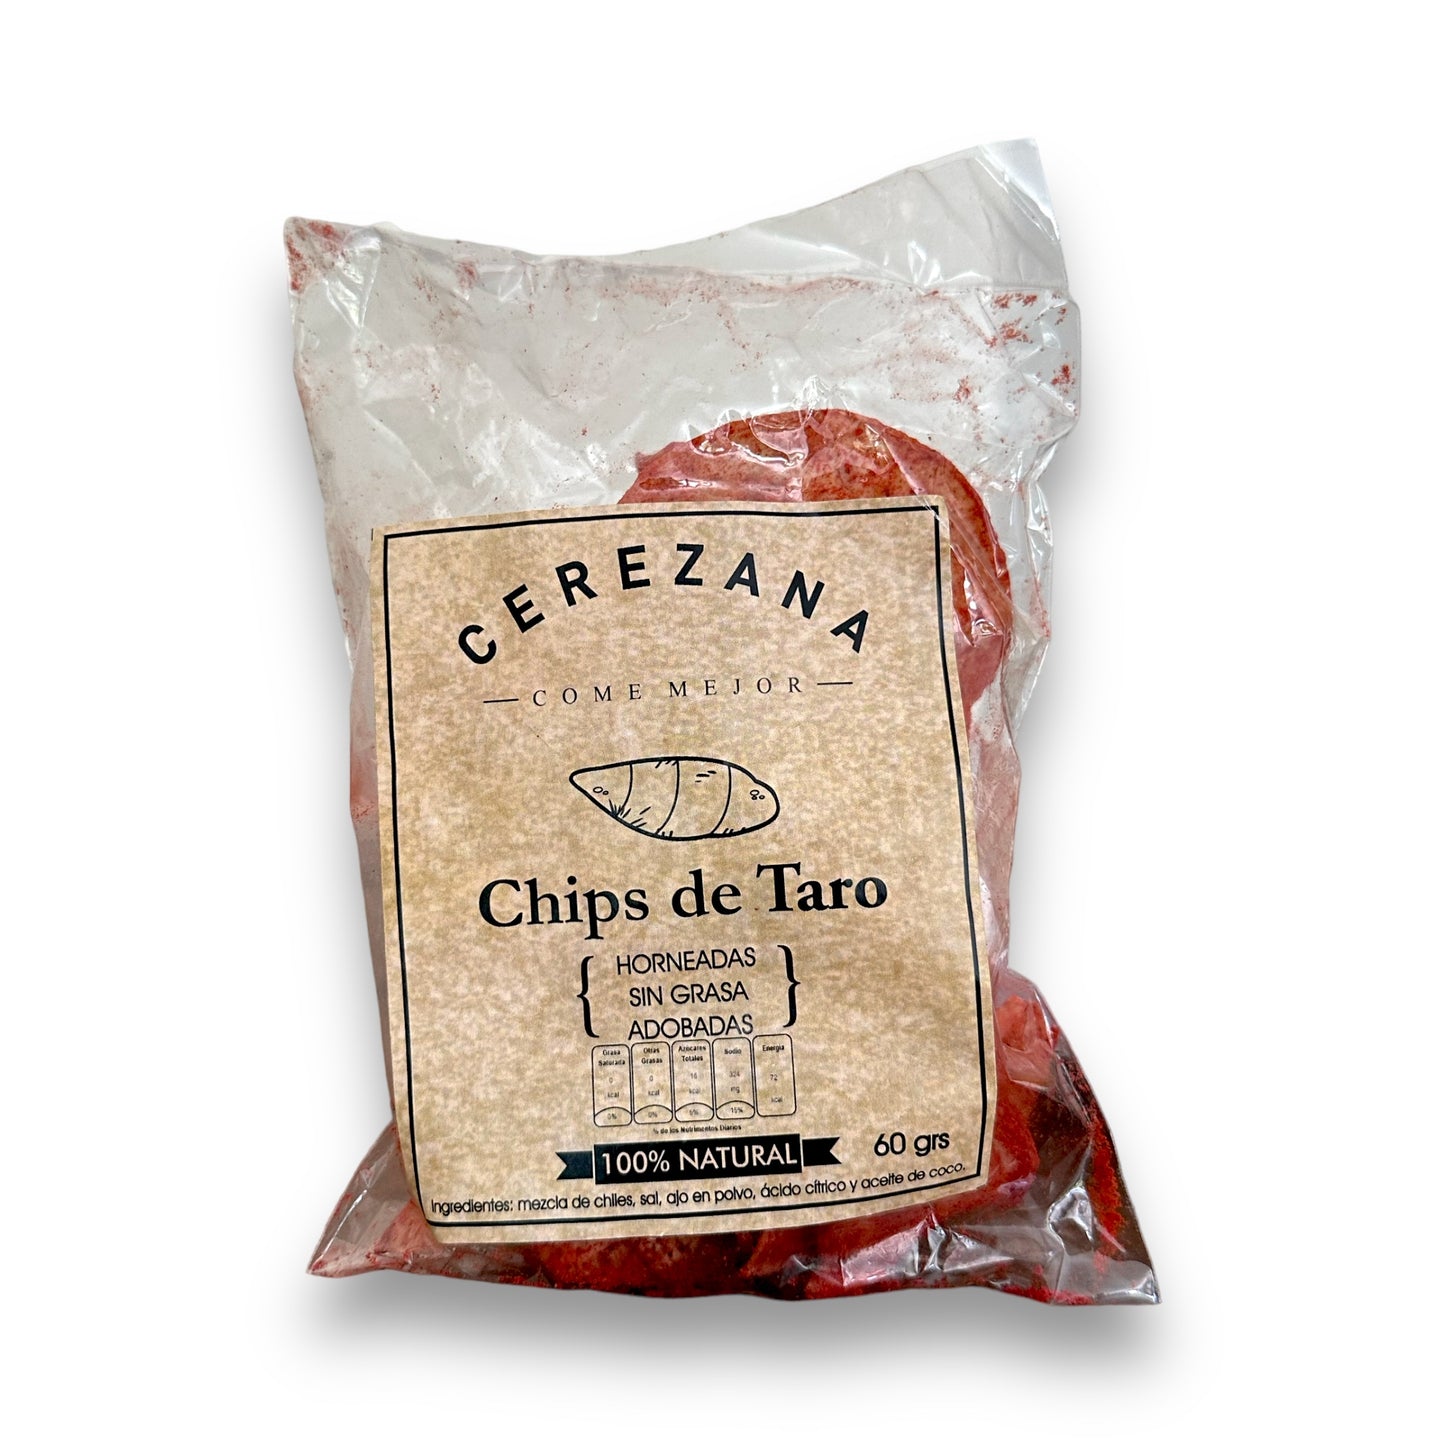 Chips de Taro